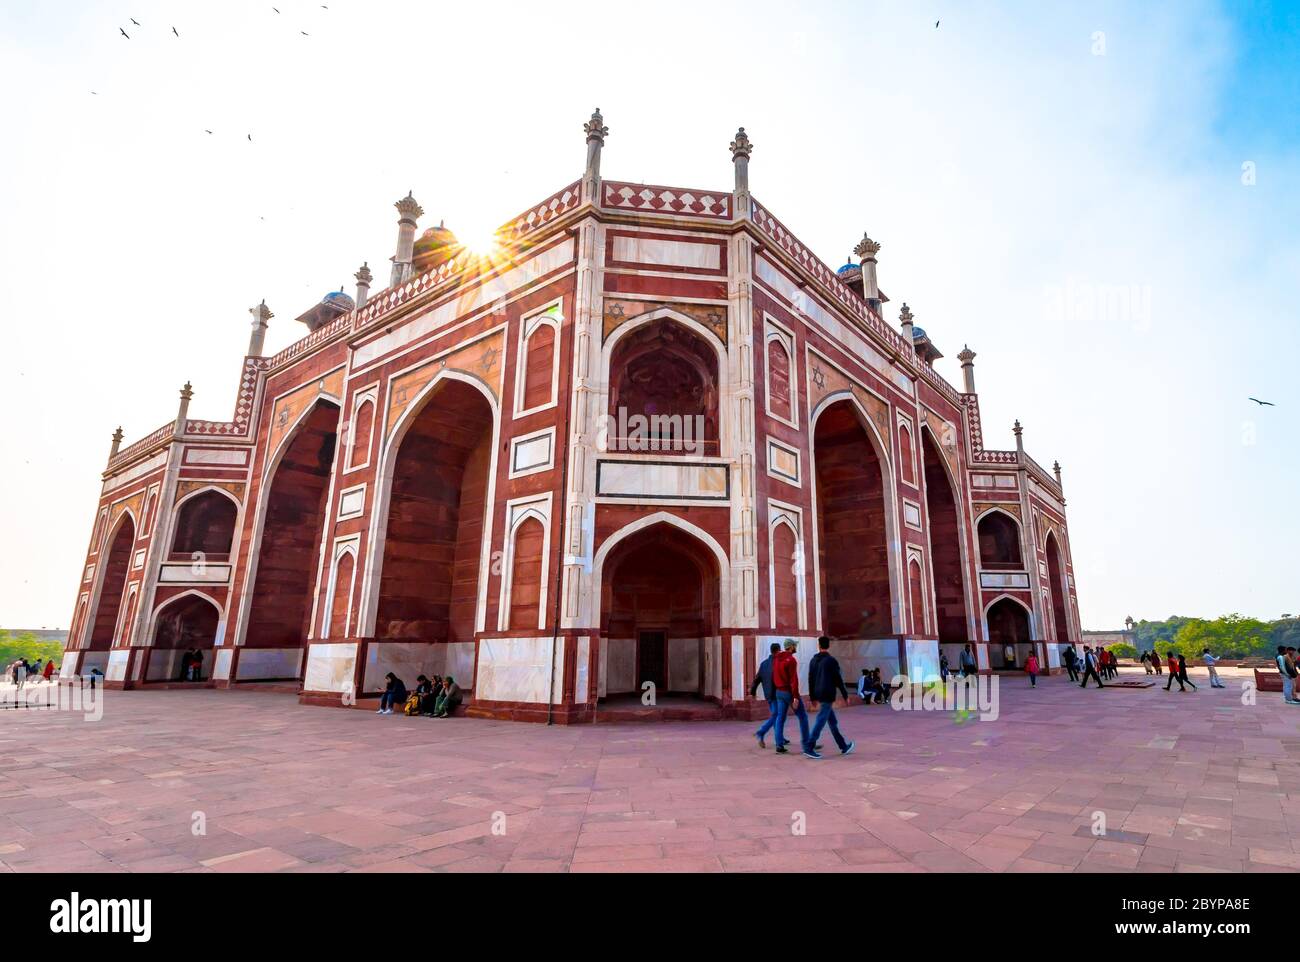 La Tomba di Humayun a Delhi, India. La Tomba di Humayun è anche famoso luogo turistico a Delhi. La gente del posto anche venuto a vedere questo grande architettura persiana Marvel. Foto Stock